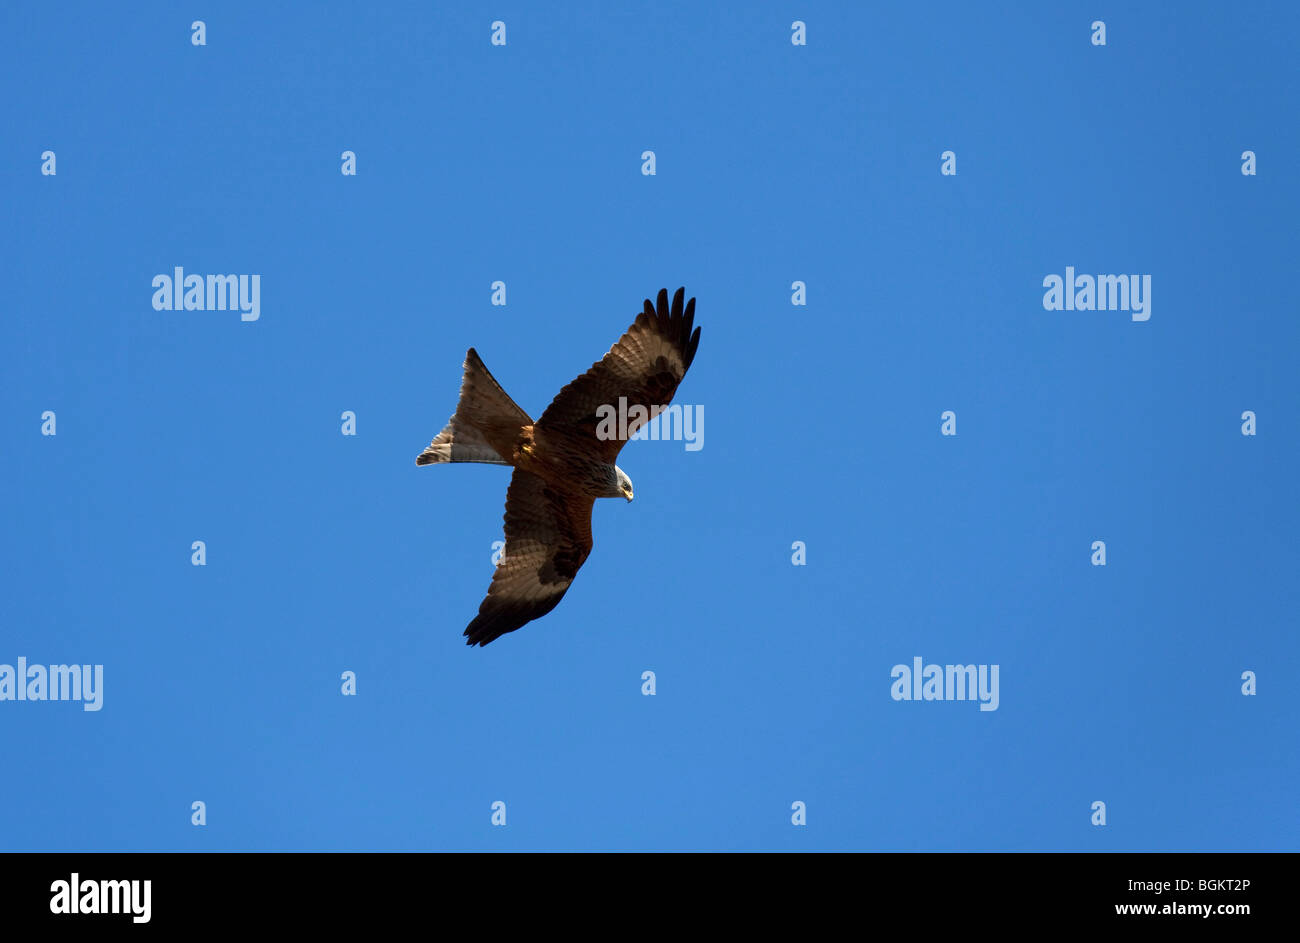 Red kite (Milvus milvus) flying against blue sky Stock Photo